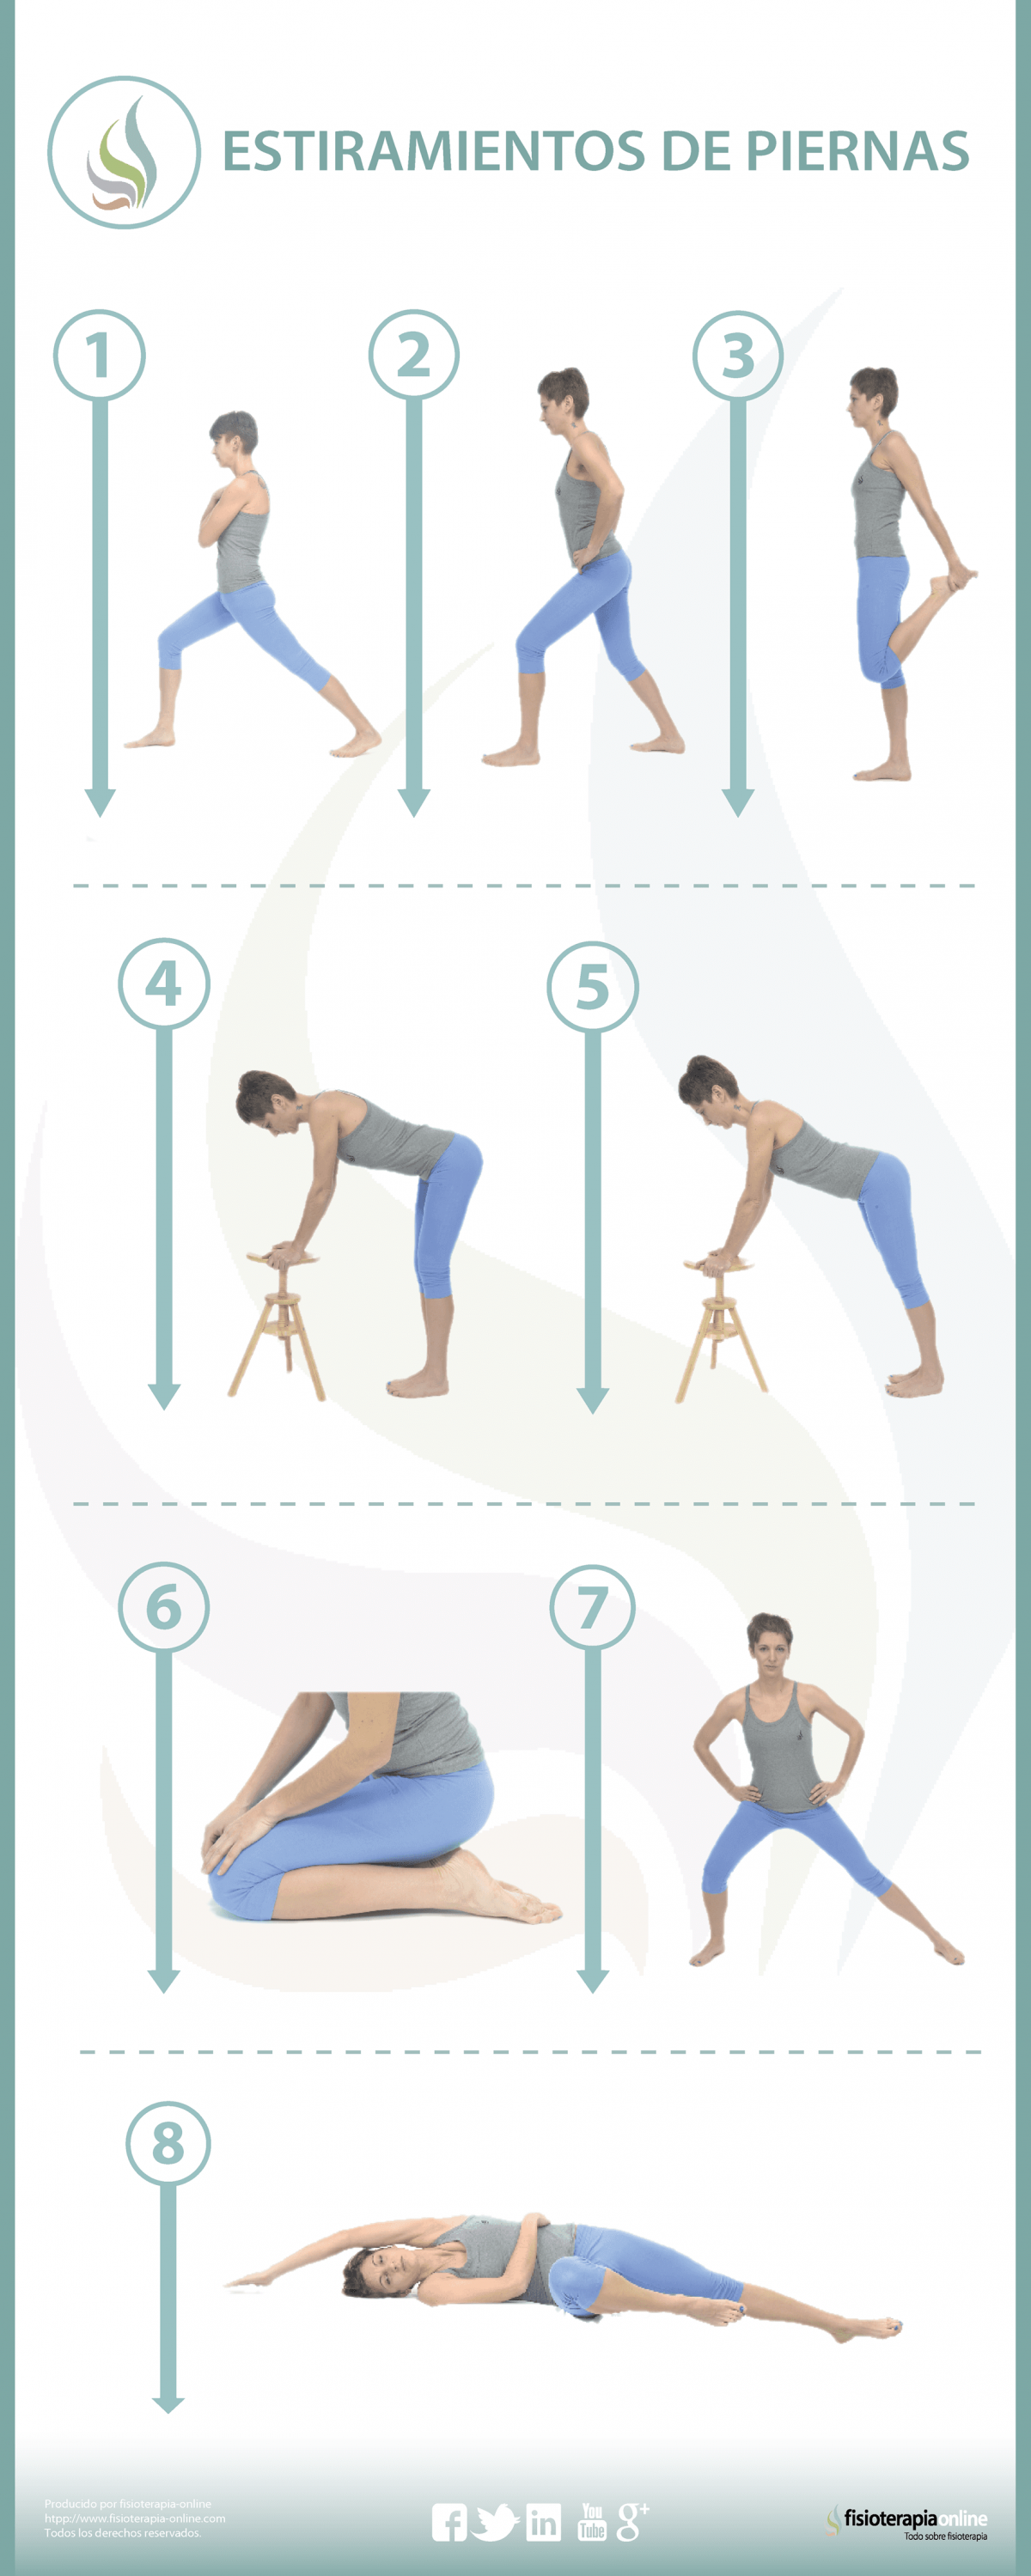 8 estiramientos para cuidar tus piernas y evitar lesiones 